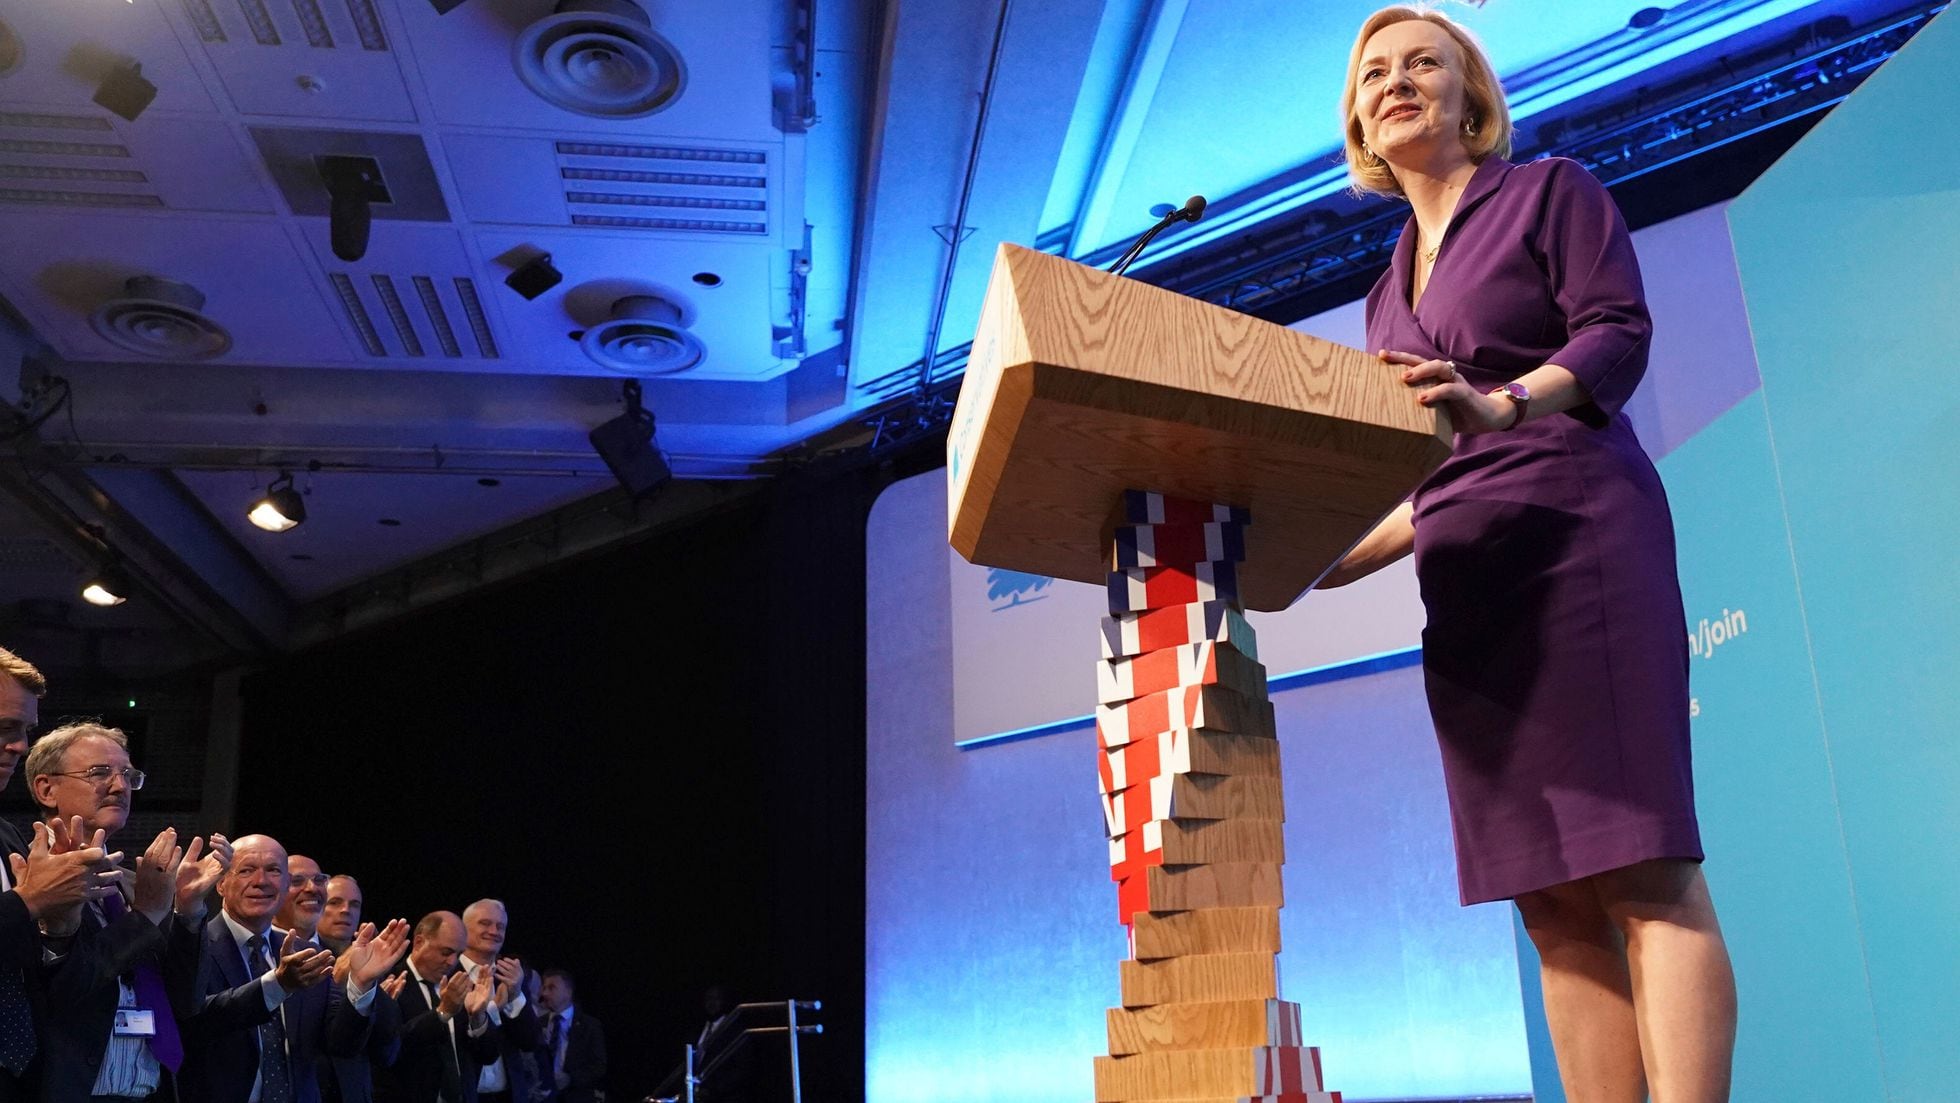 Reino Unido: Liz Truss sustituirá a Boris Johnson como primera ministra al vencer en las primarias del Partido Conservador | Internacional | EL PAÍS